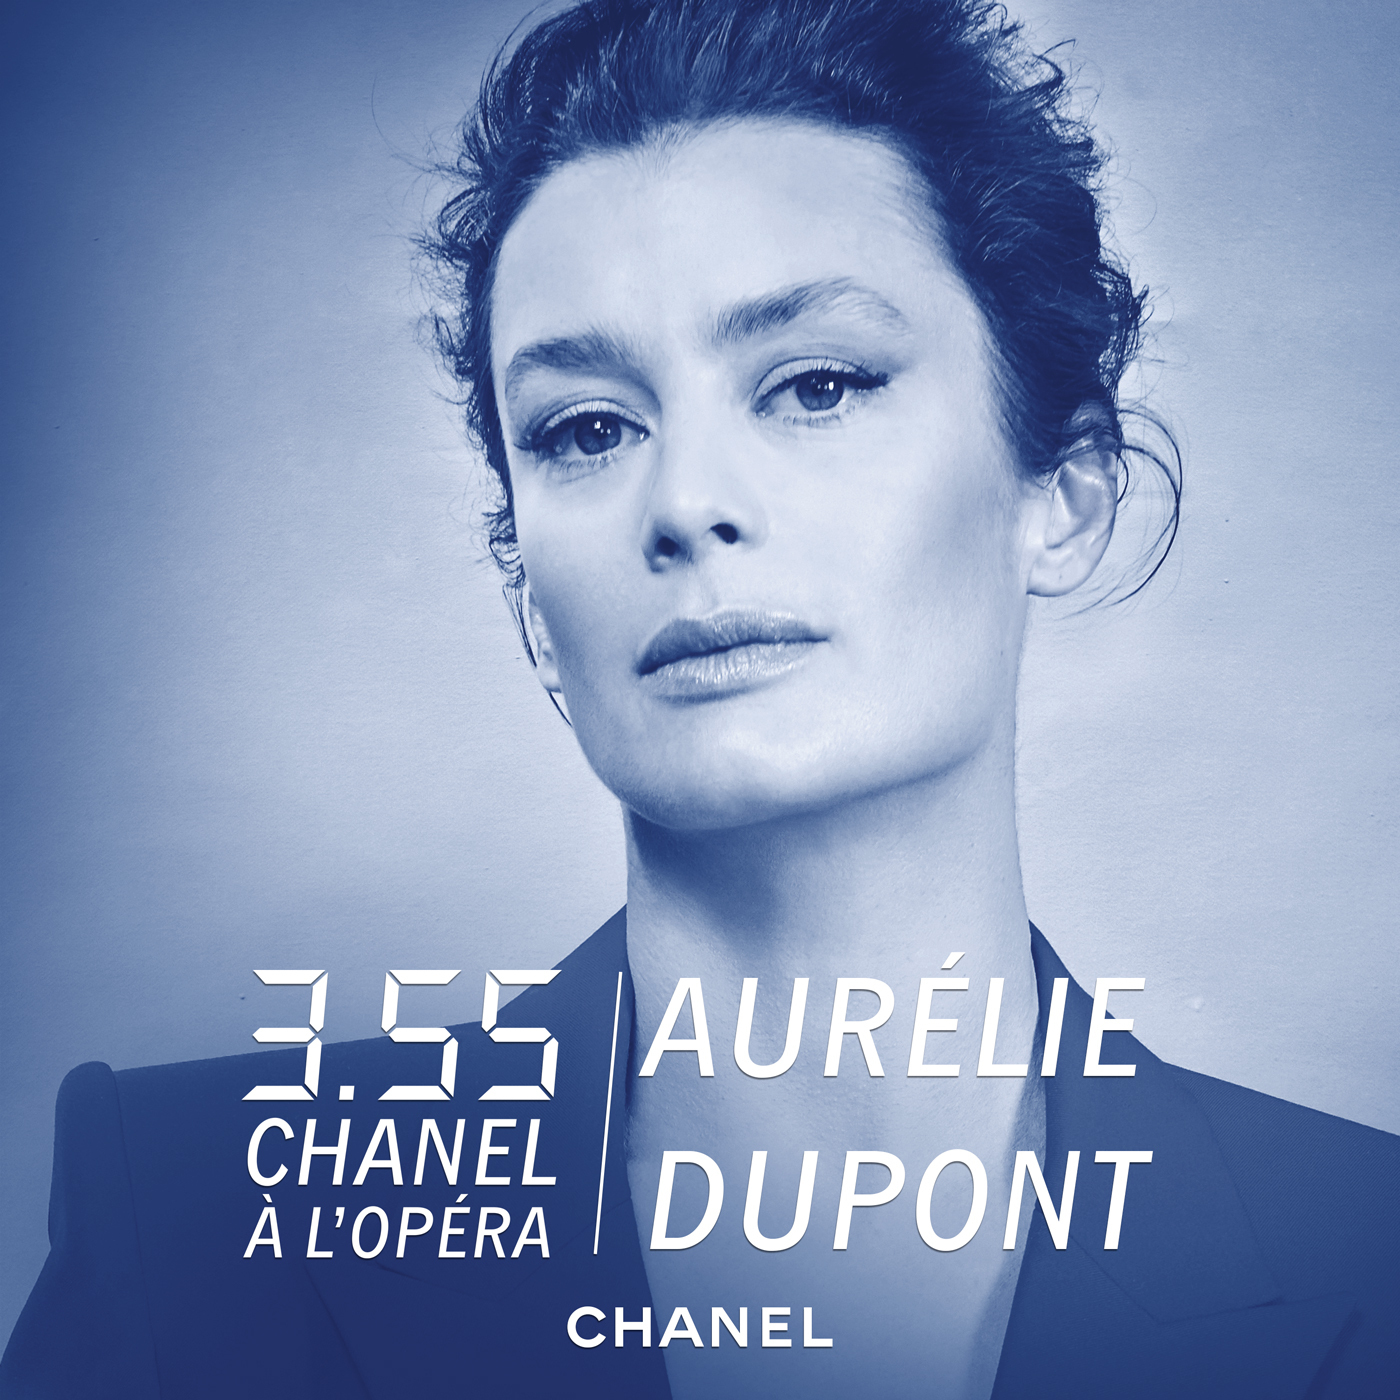 Aurélie Dupont — CHANEL à l’Opéra